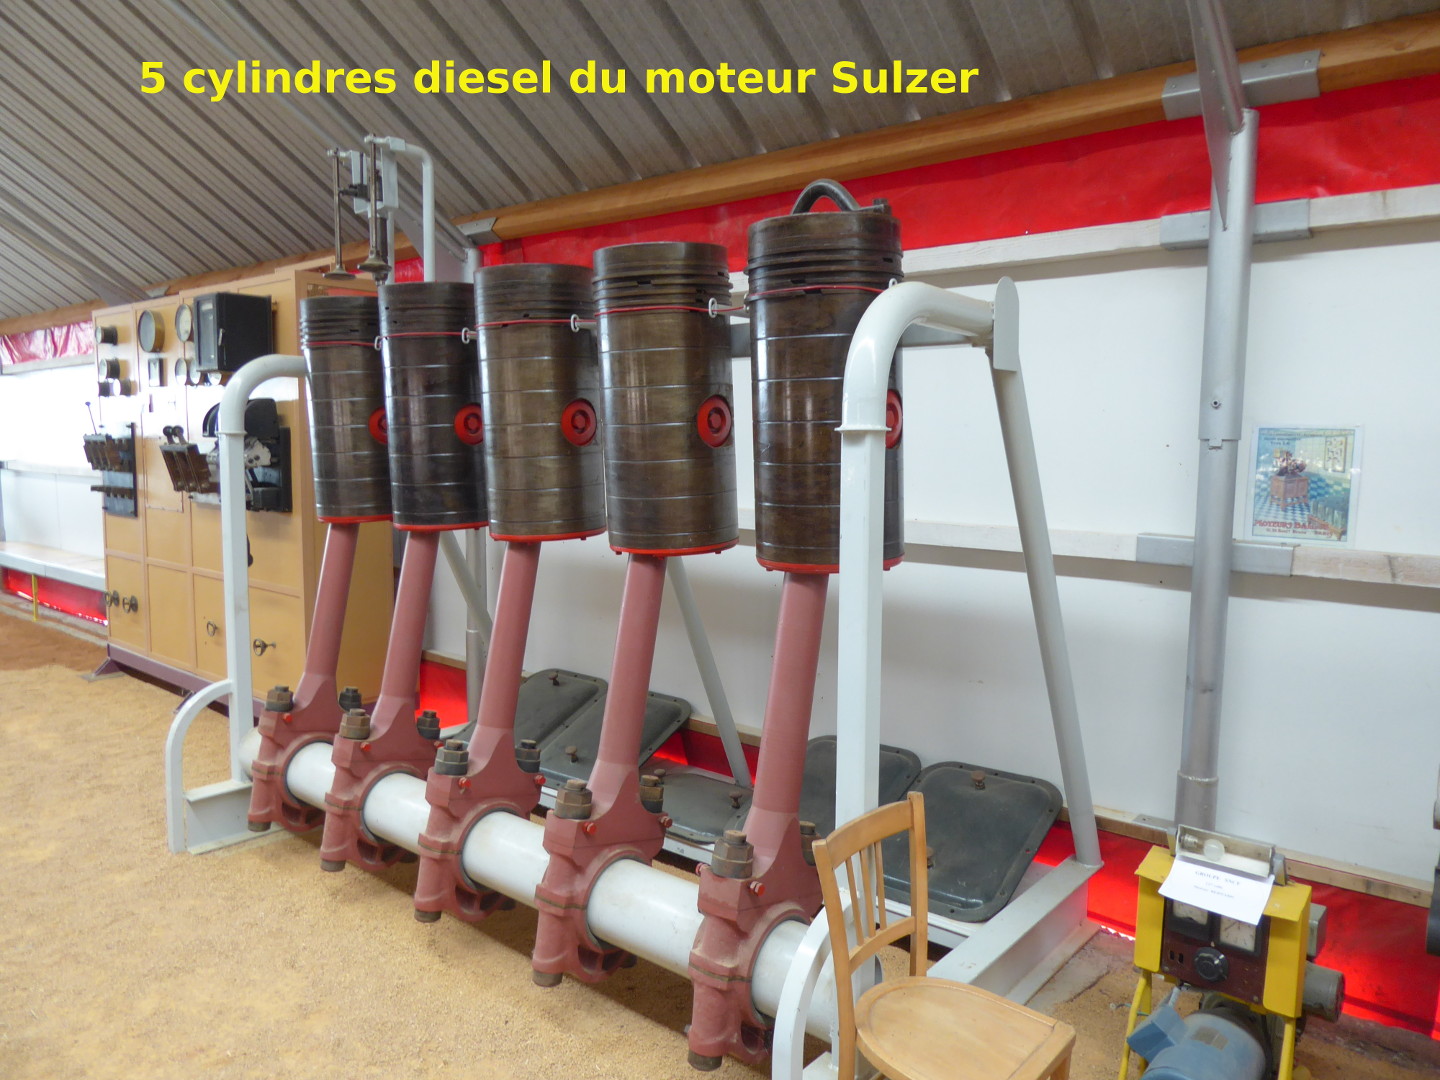 les 5 cylindres diesel du moteur Sulzer (Magnet, 30 juin 2017)